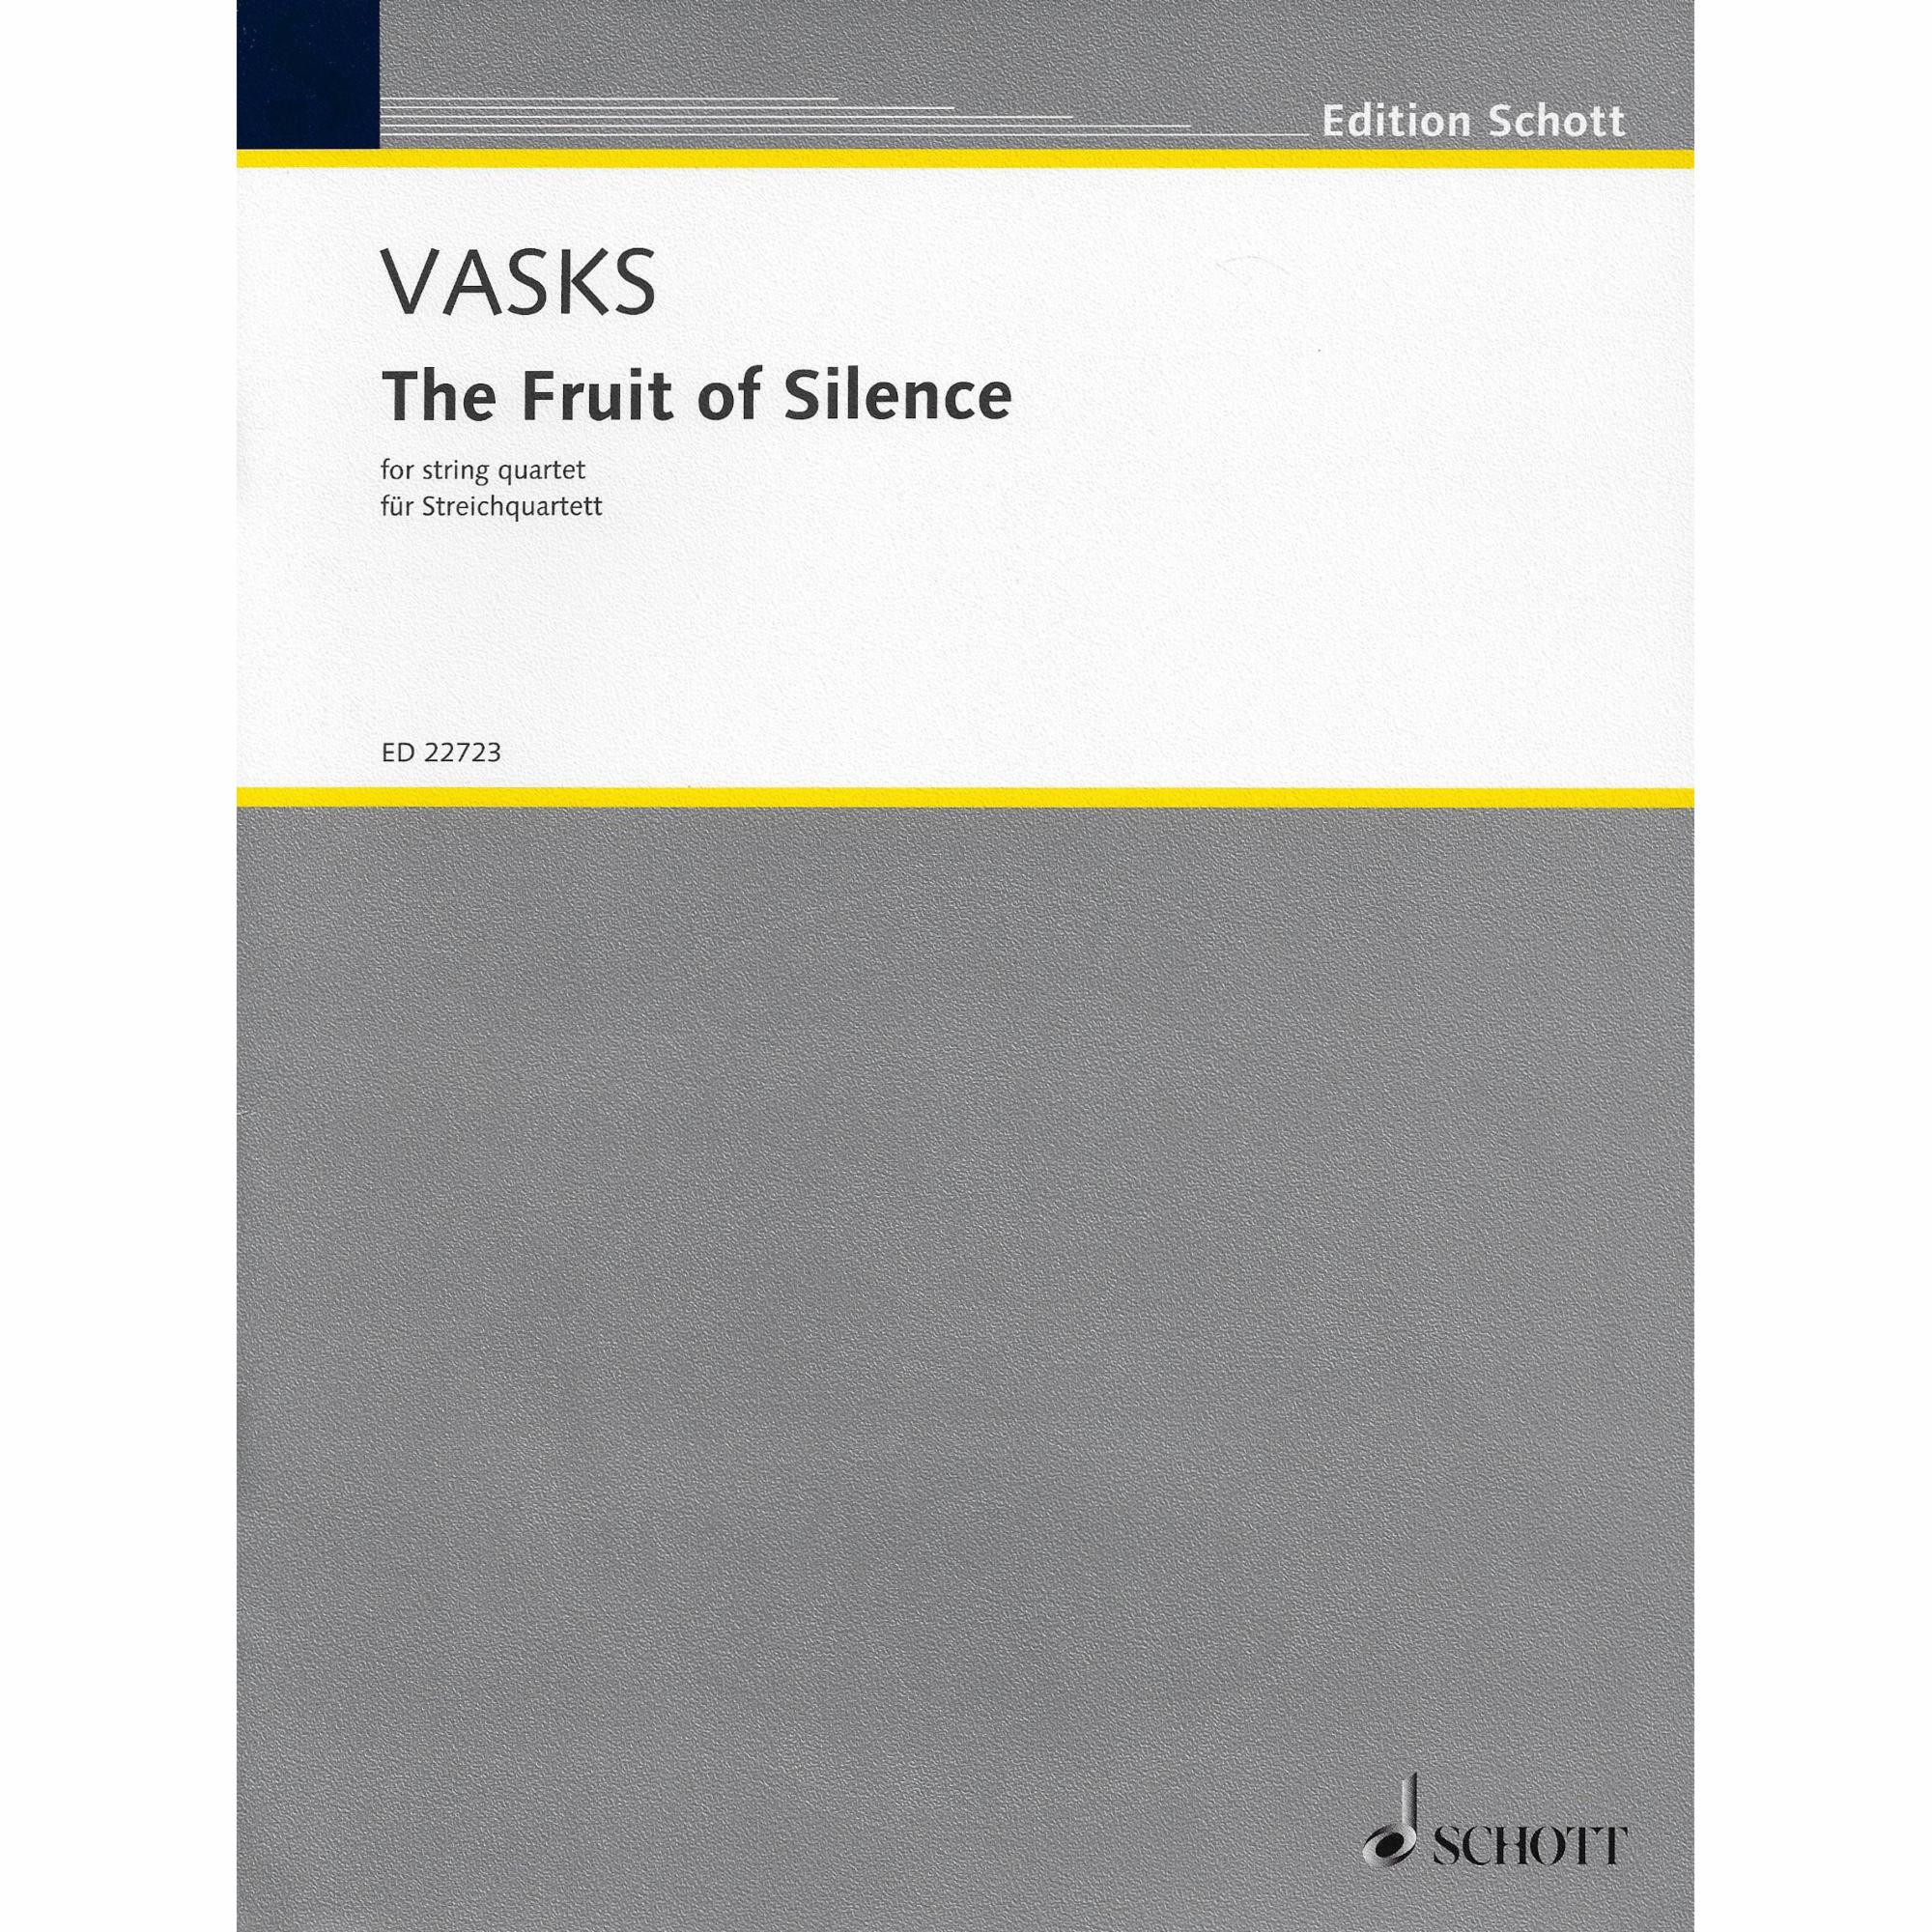 Vasks -- The Fruit of Silence for String Quartet